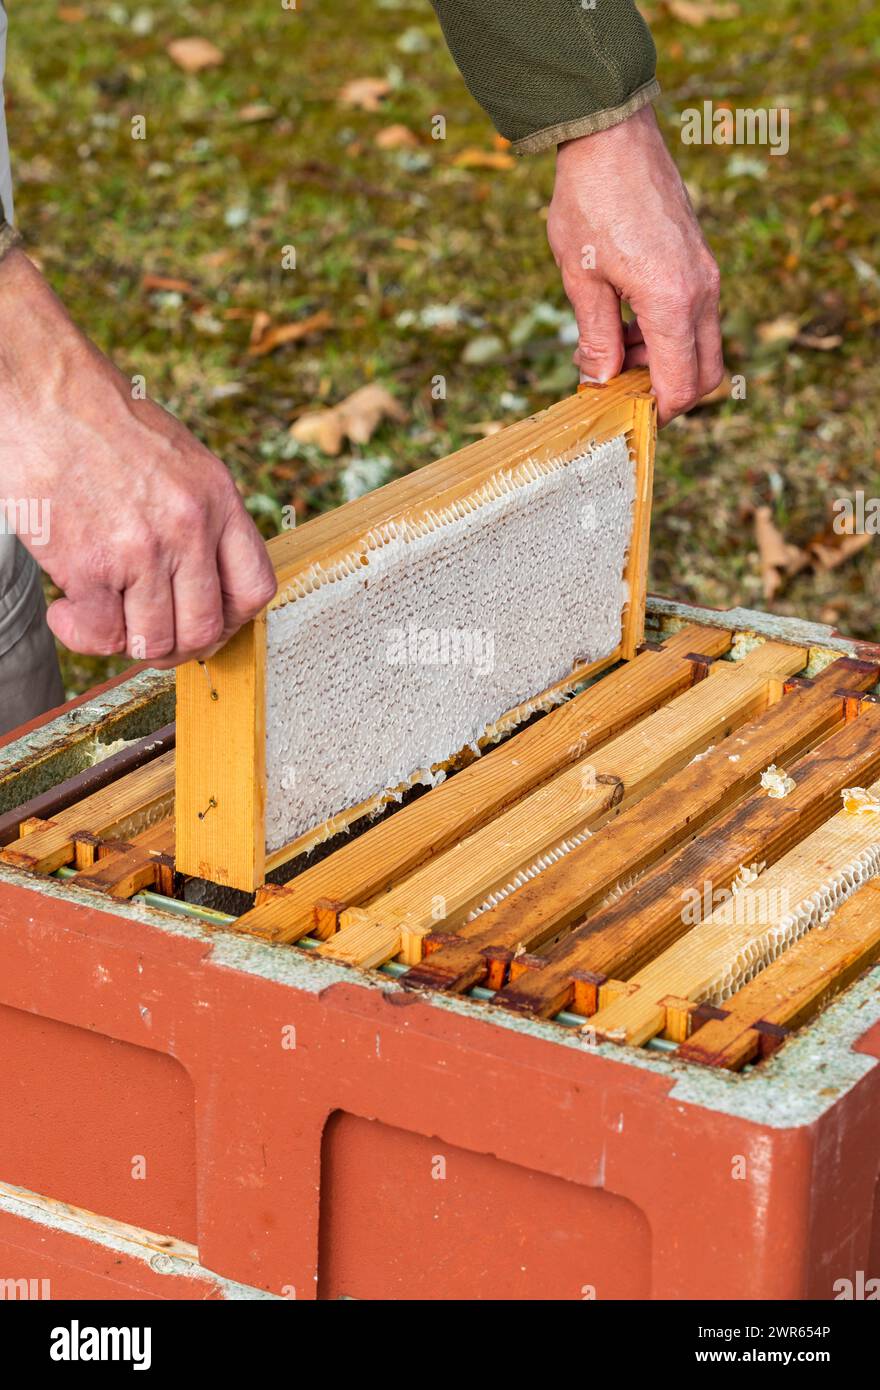 Apiculteur soulevant des cadres d'une ruche pour vérifier la présence de nid d'abeilles Banque D'Images